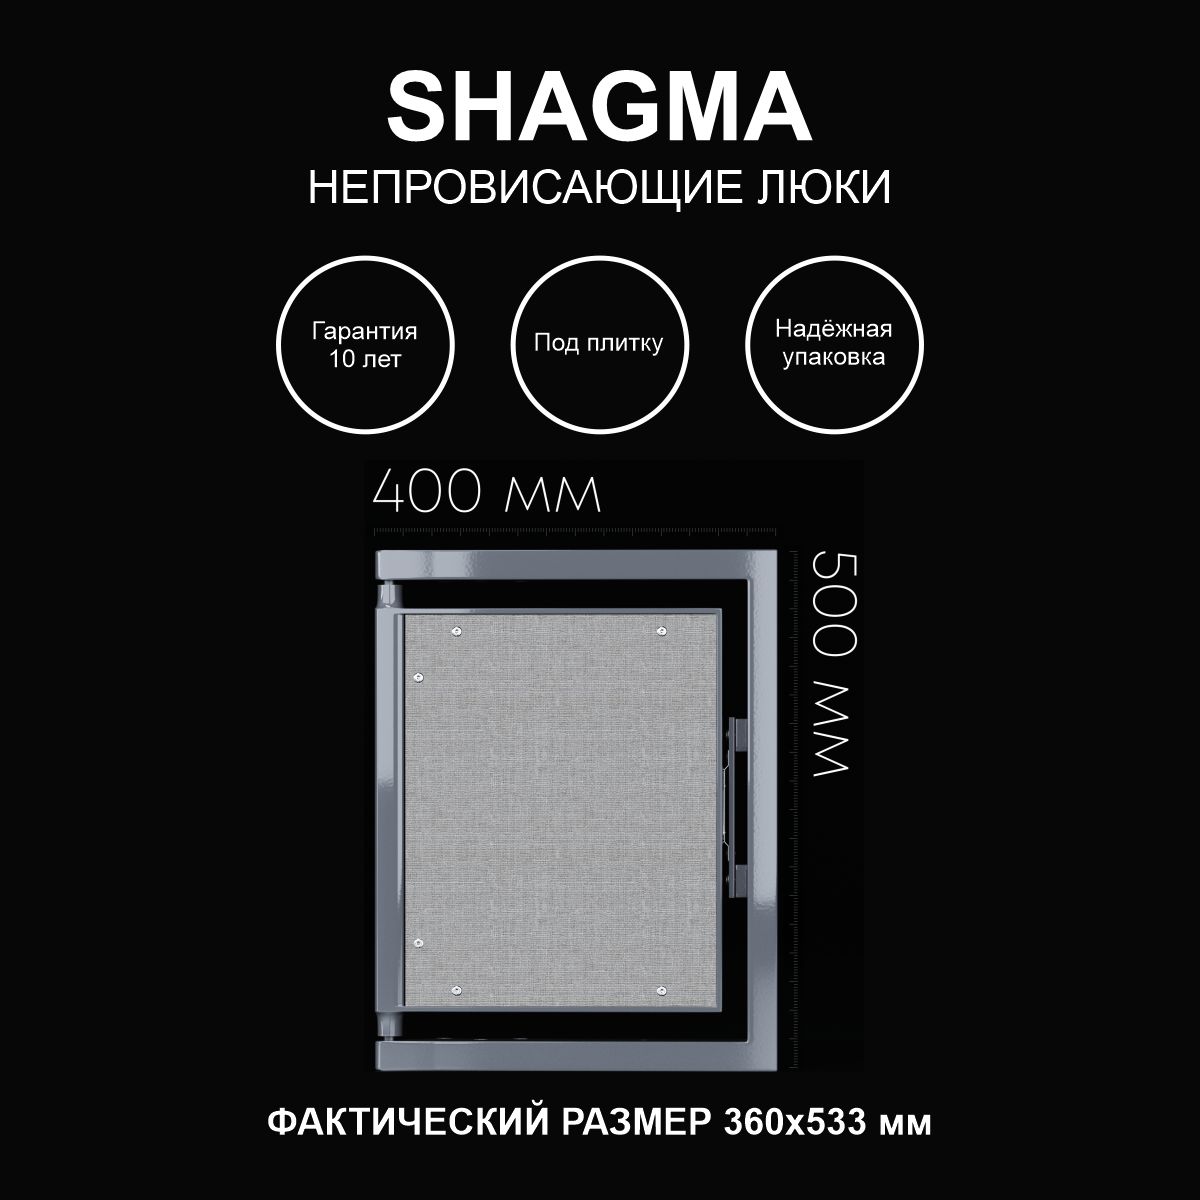 Люк SHAGMA ревизионный под плитку сантехнический 400х500 мм